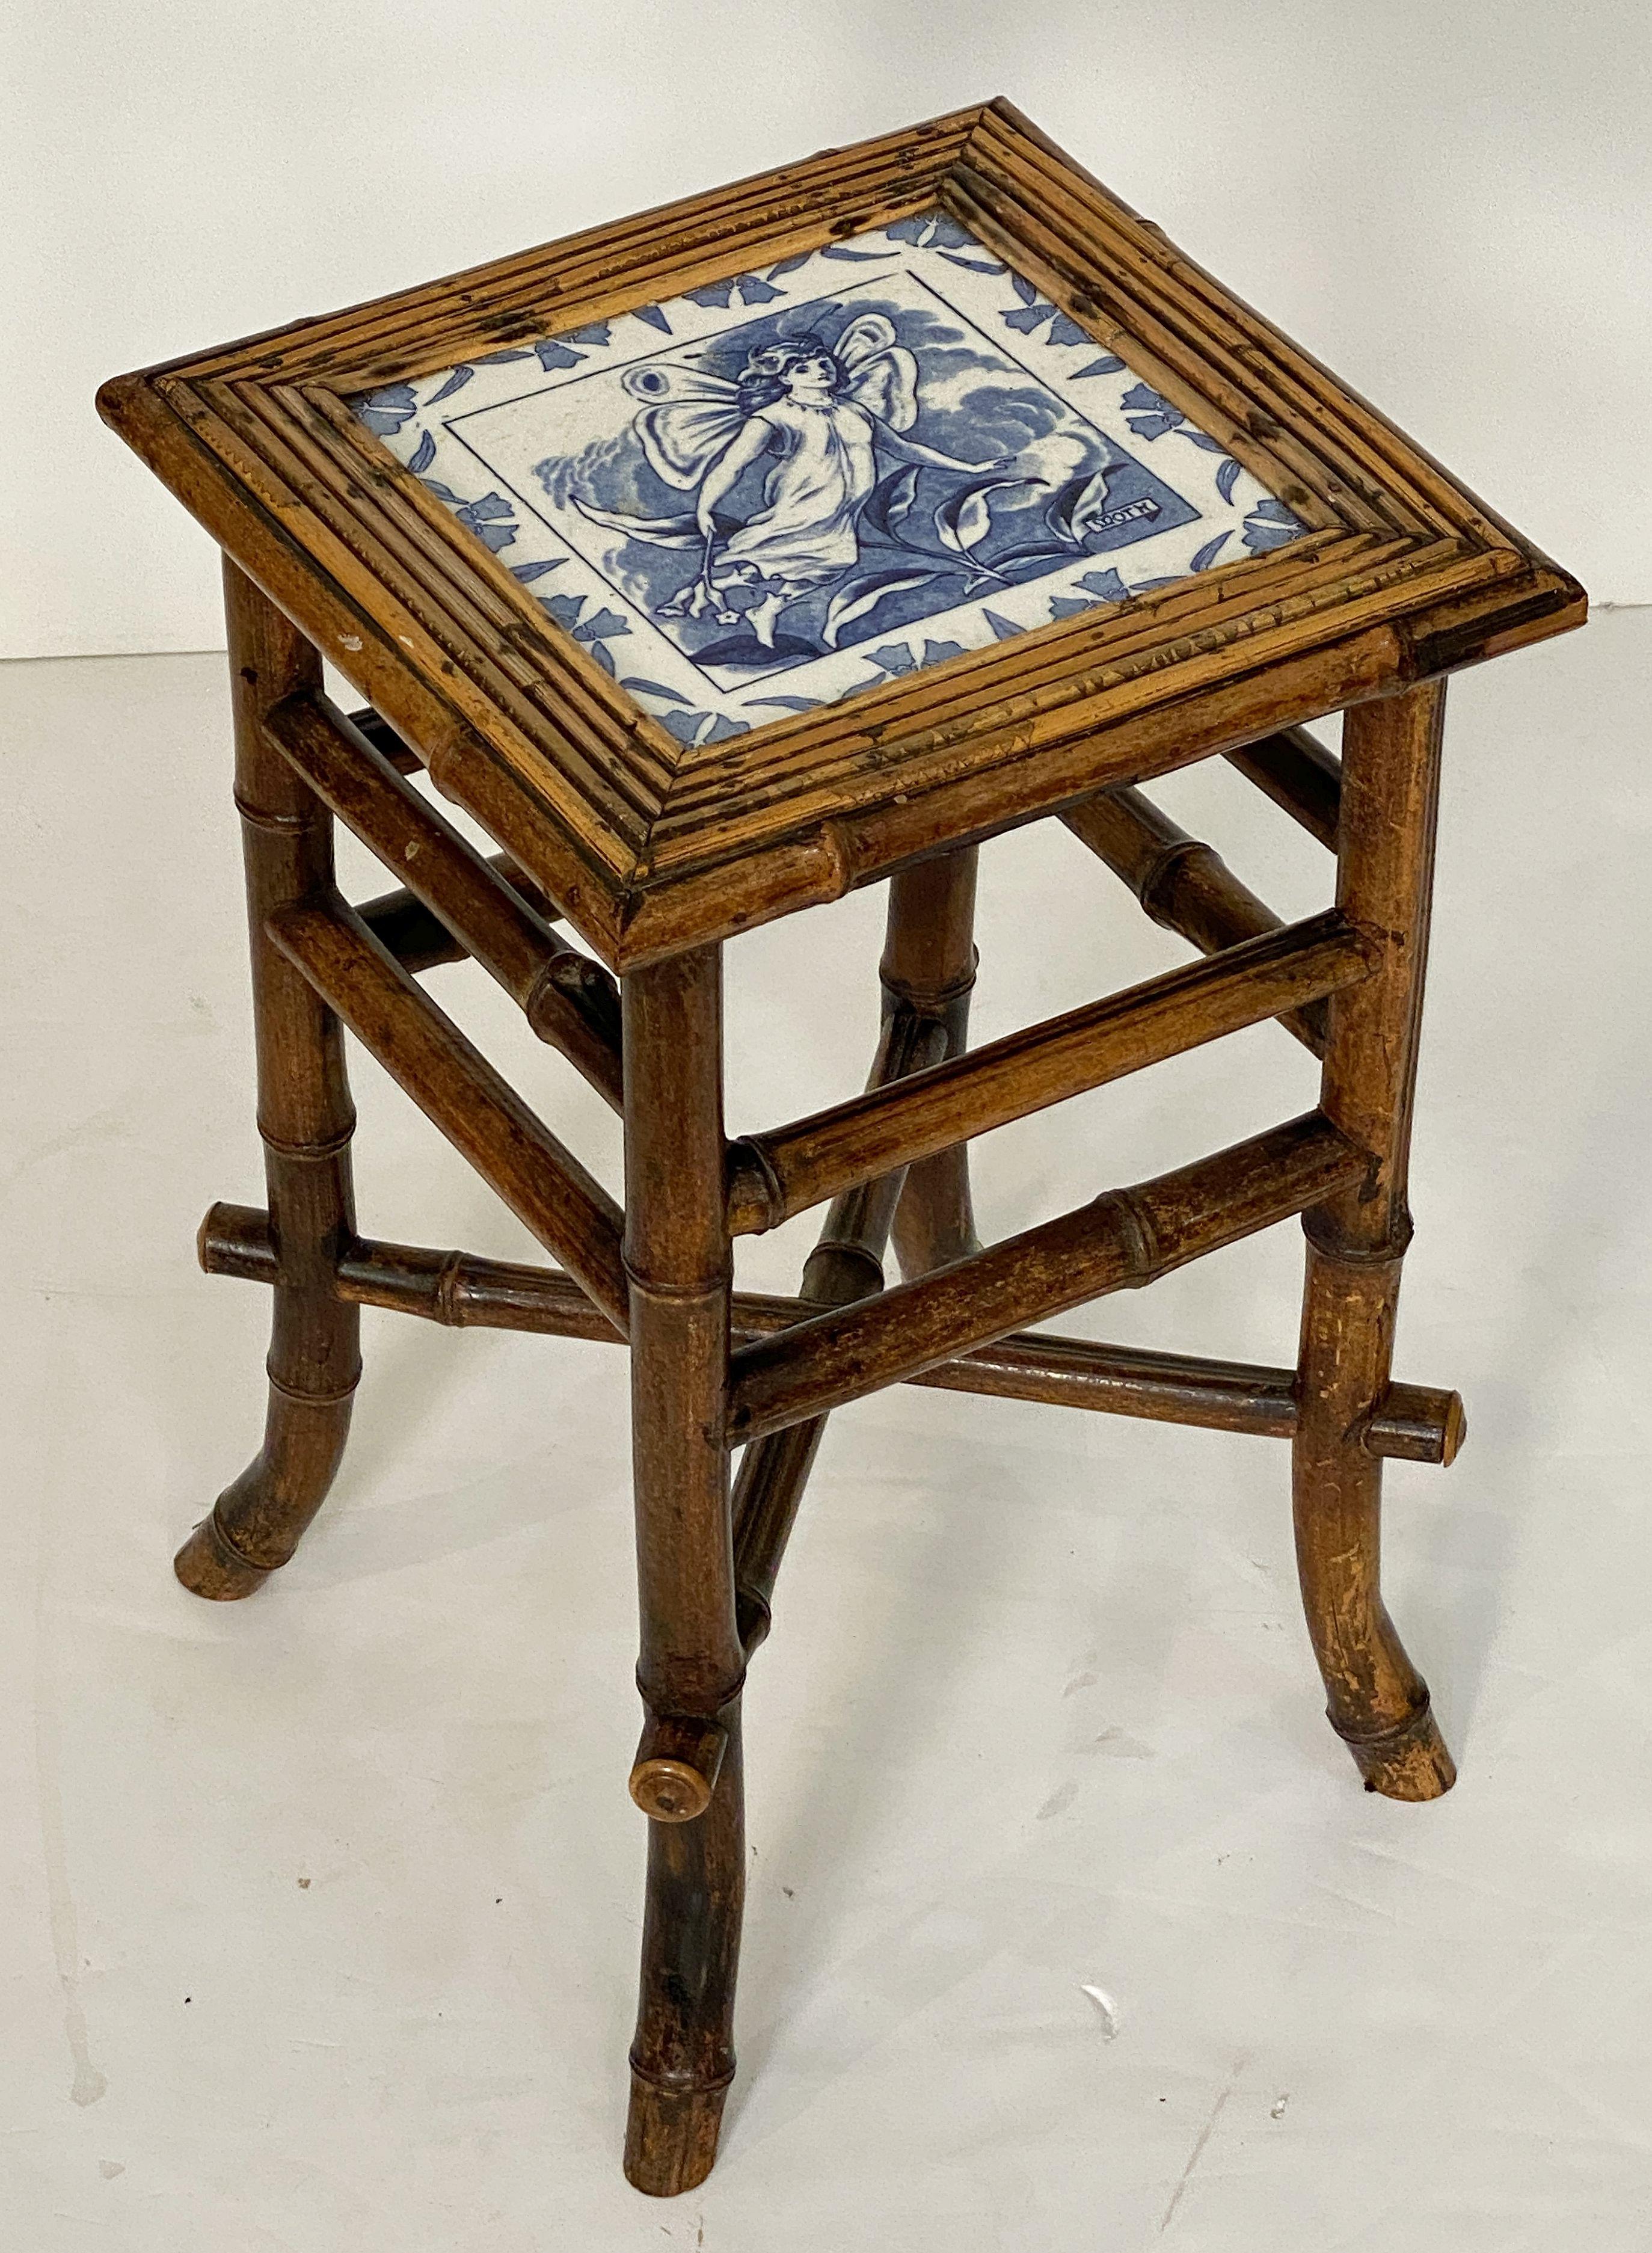 Table ou tabouret en bambou anglais de la période du Mouvement esthétique de la fin du XIXe siècle,  avec une belle finition patinée et un siège carré en bambou avec un carreau de céramique bleu et blanc de Wedgwood représentant la fée Moth, tirée